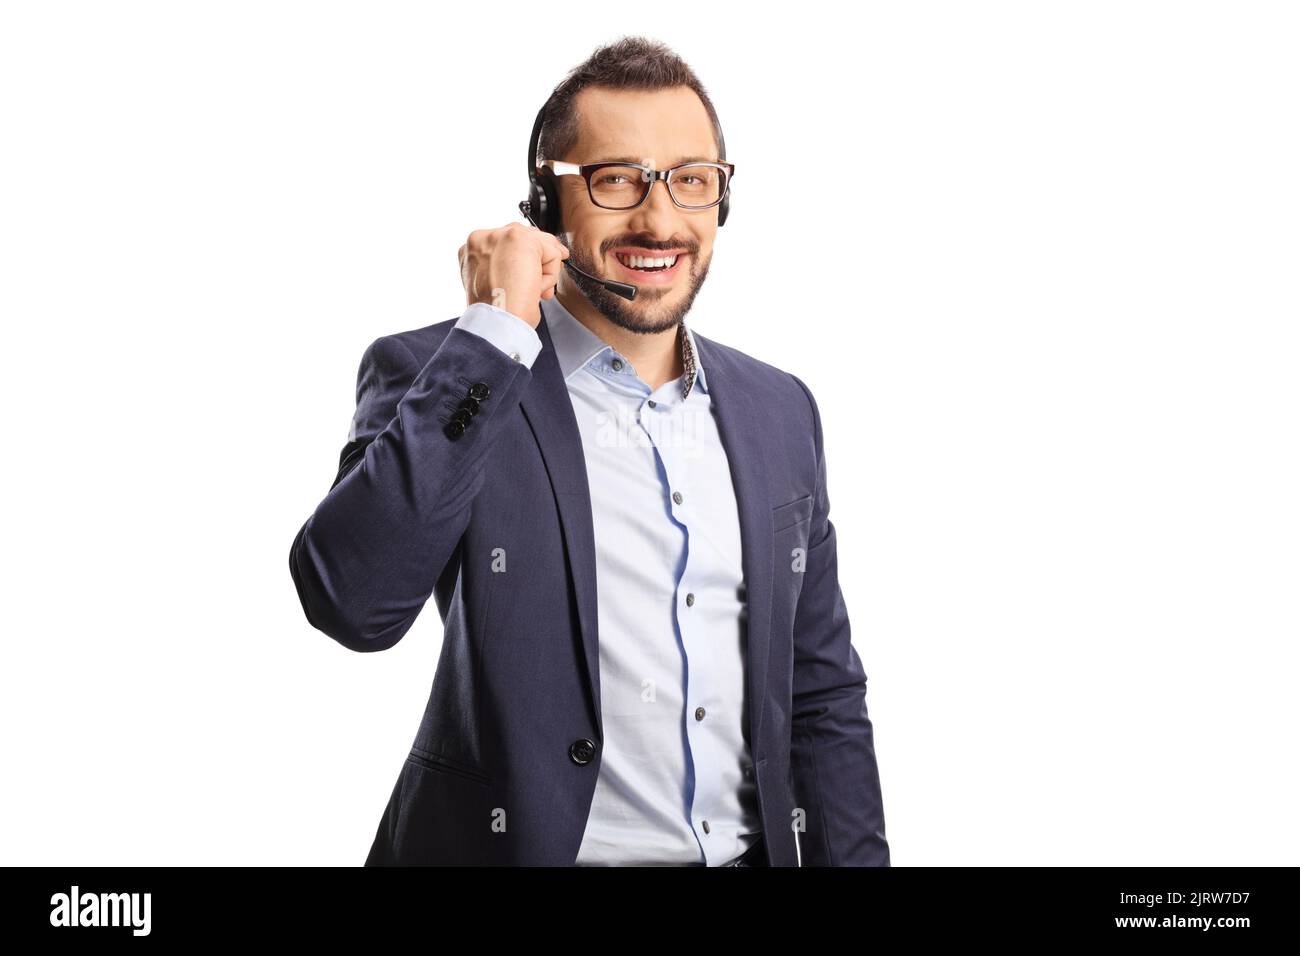 Männlicher Telefonhörer mit einem auf weißem Hintergrund isolierten Headset, das die Kamera anlächelt Stockfoto